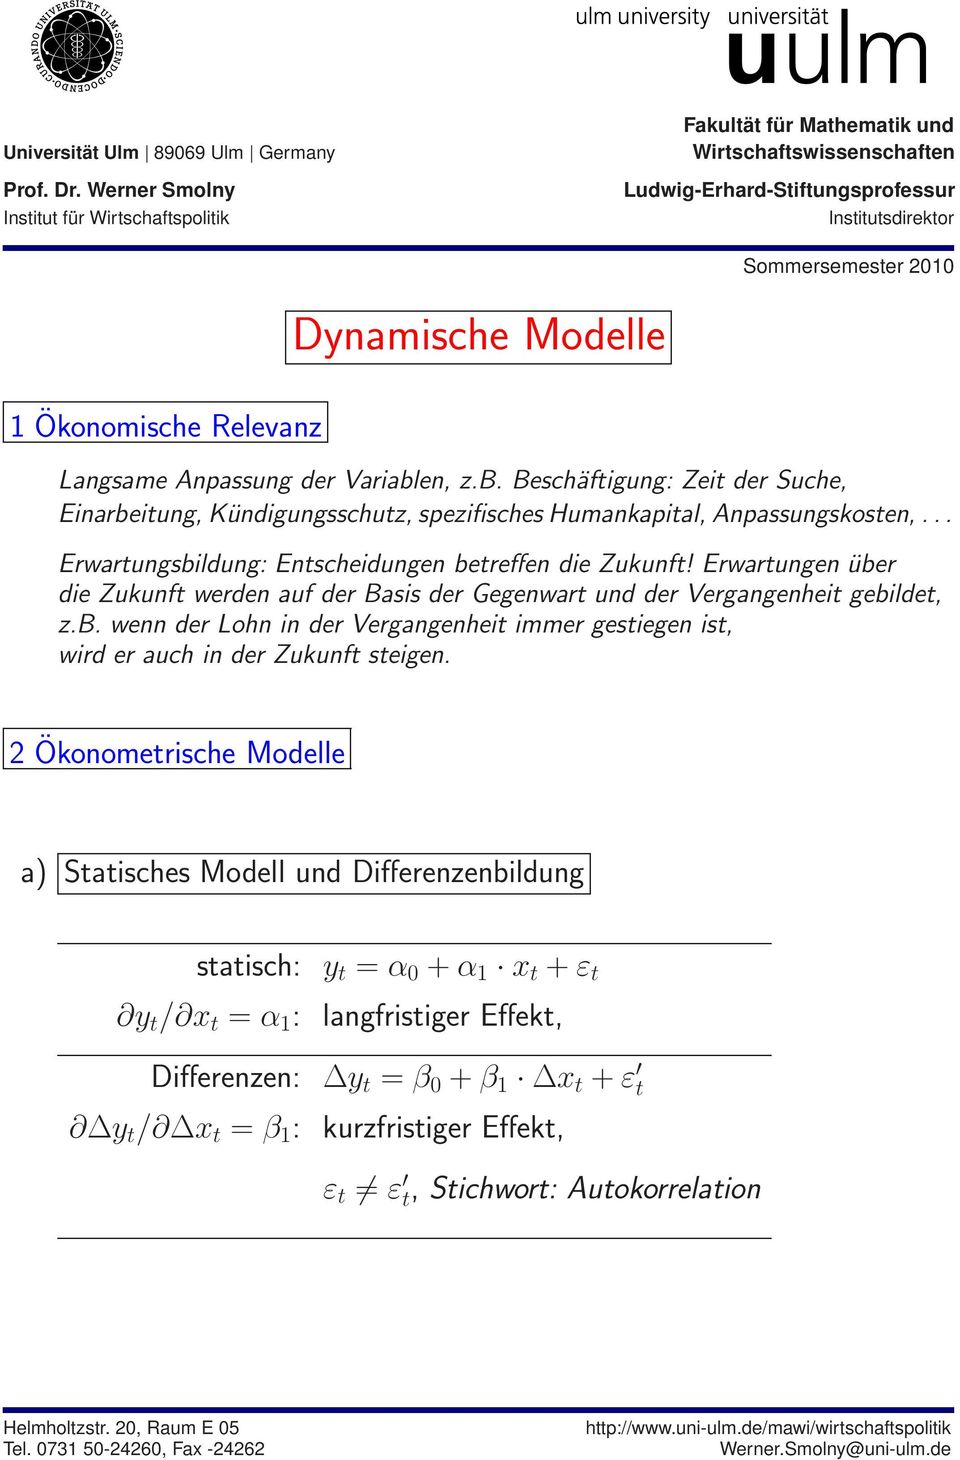 Dynamische Modelle Langsame Anpassung der Variablen, z.b. Beschäftigung: Zeit der Suche, Einarbeitung, Kündigungsschutz, spezifisches Humankapital, Anpassungskosten,.